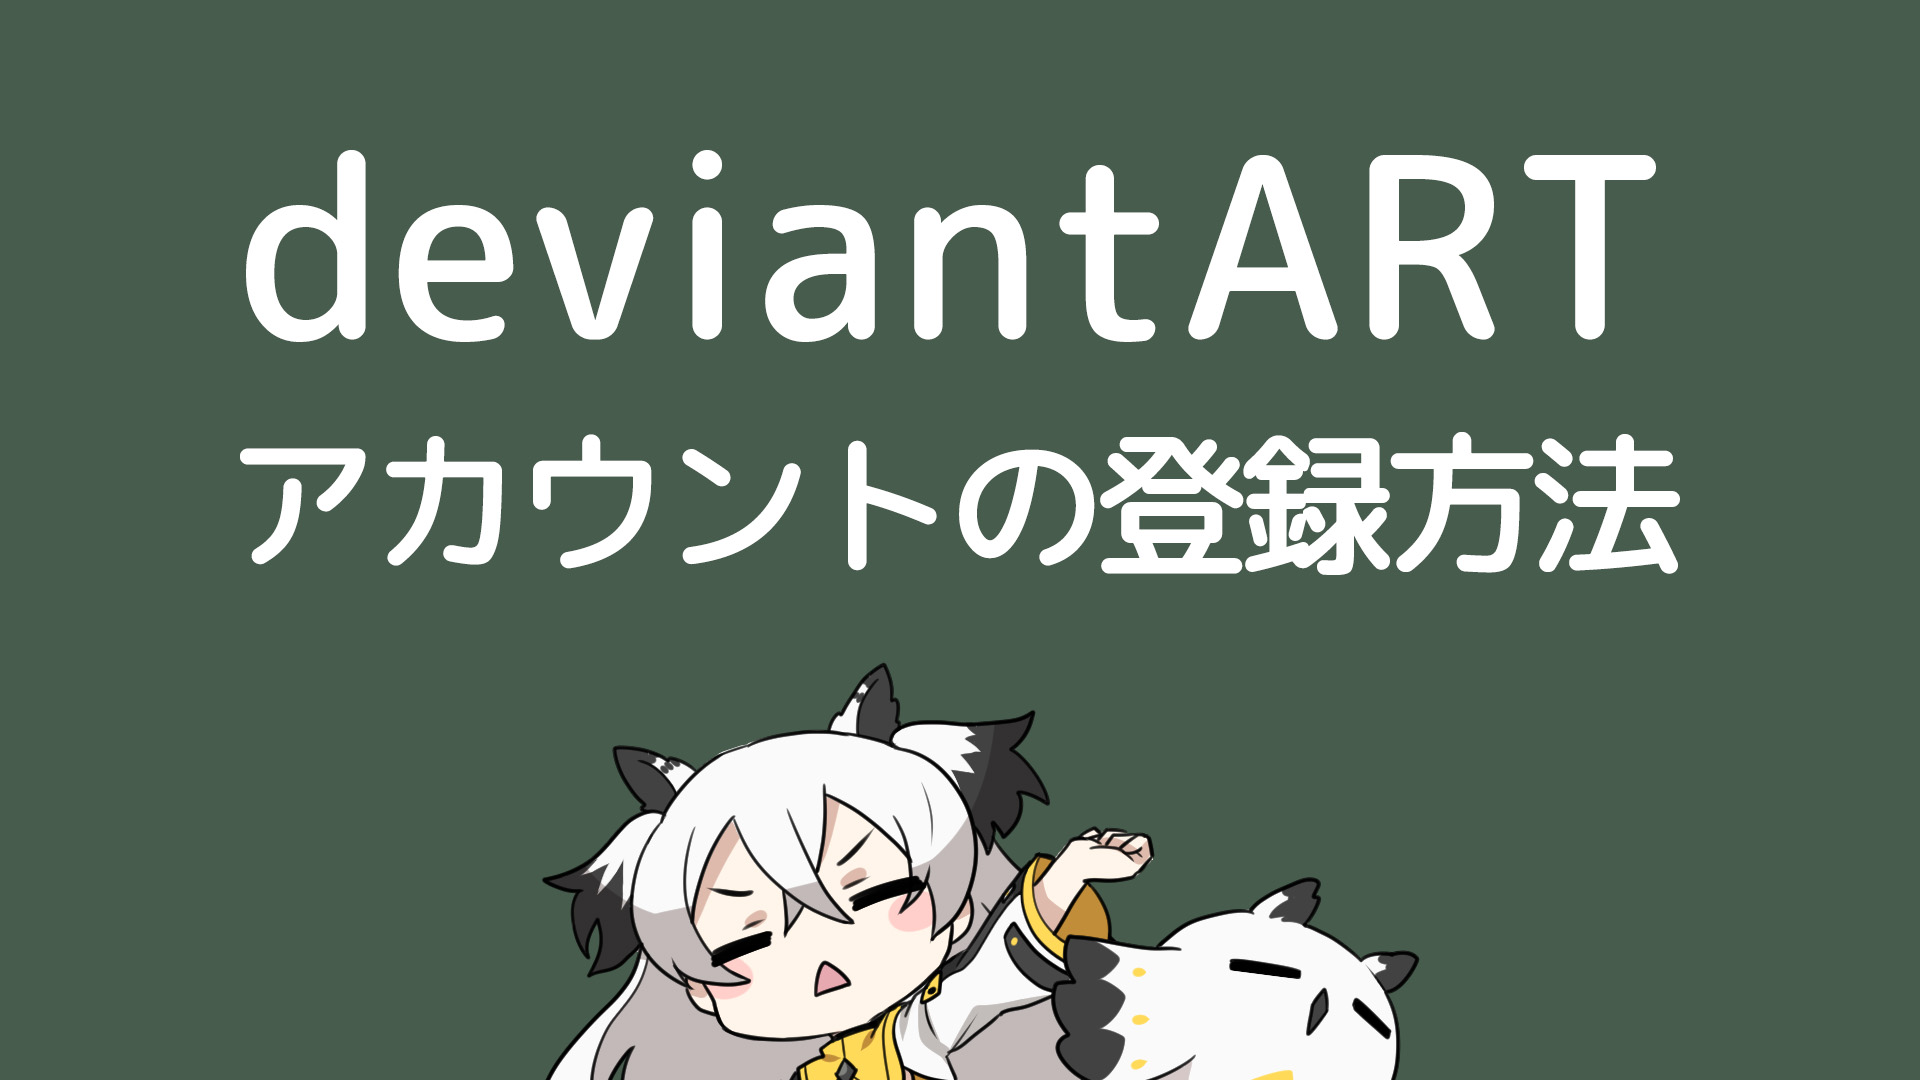 Deviantart 日本 語